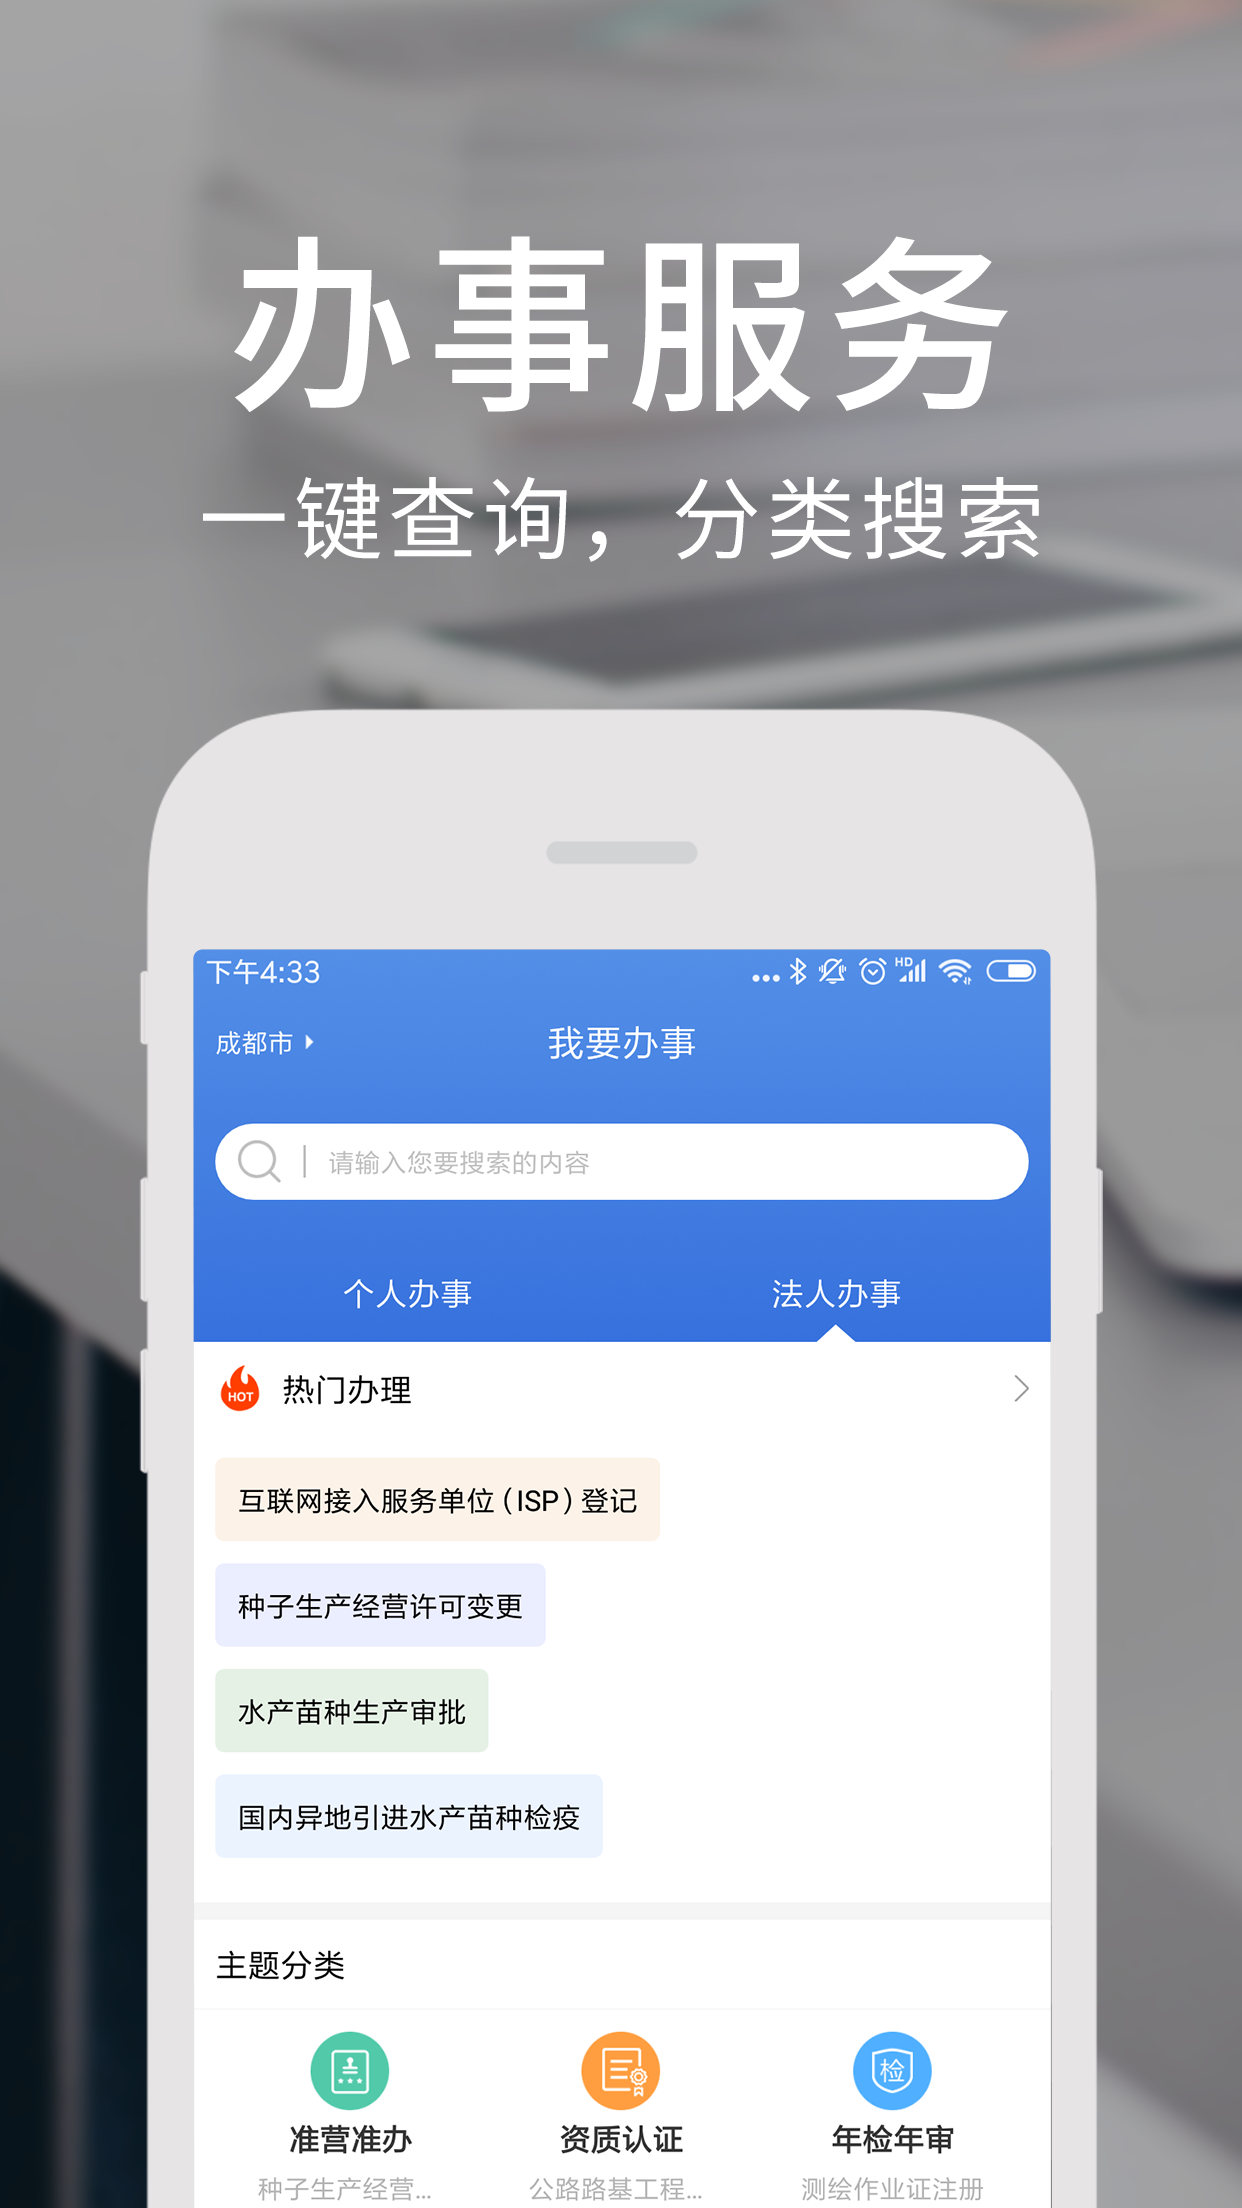 天府通办app官方版v4.2.6